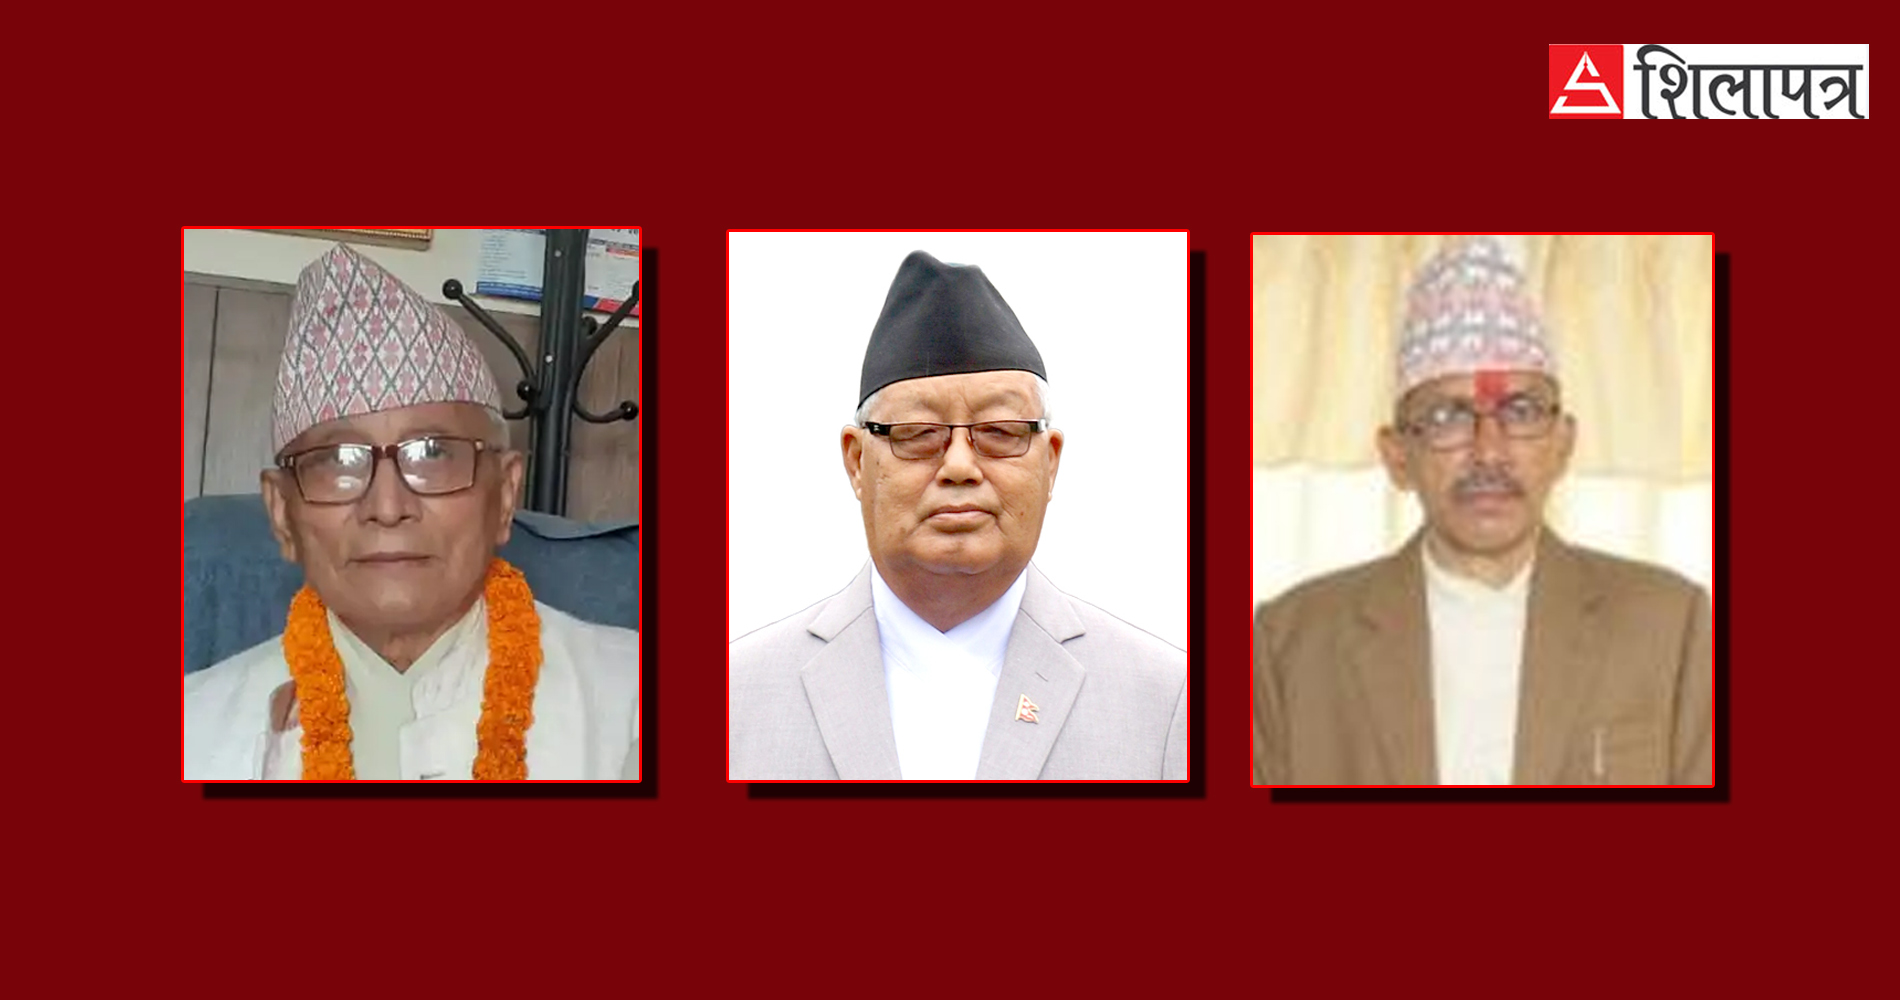 नयाँ सरकारमा प्रदेश प्रमुखको आफूखुशी निर्णय, संविधानविद् भन्छन्– लुम्बिनी र गण्डकीमा संविधानविपरीत भयो 